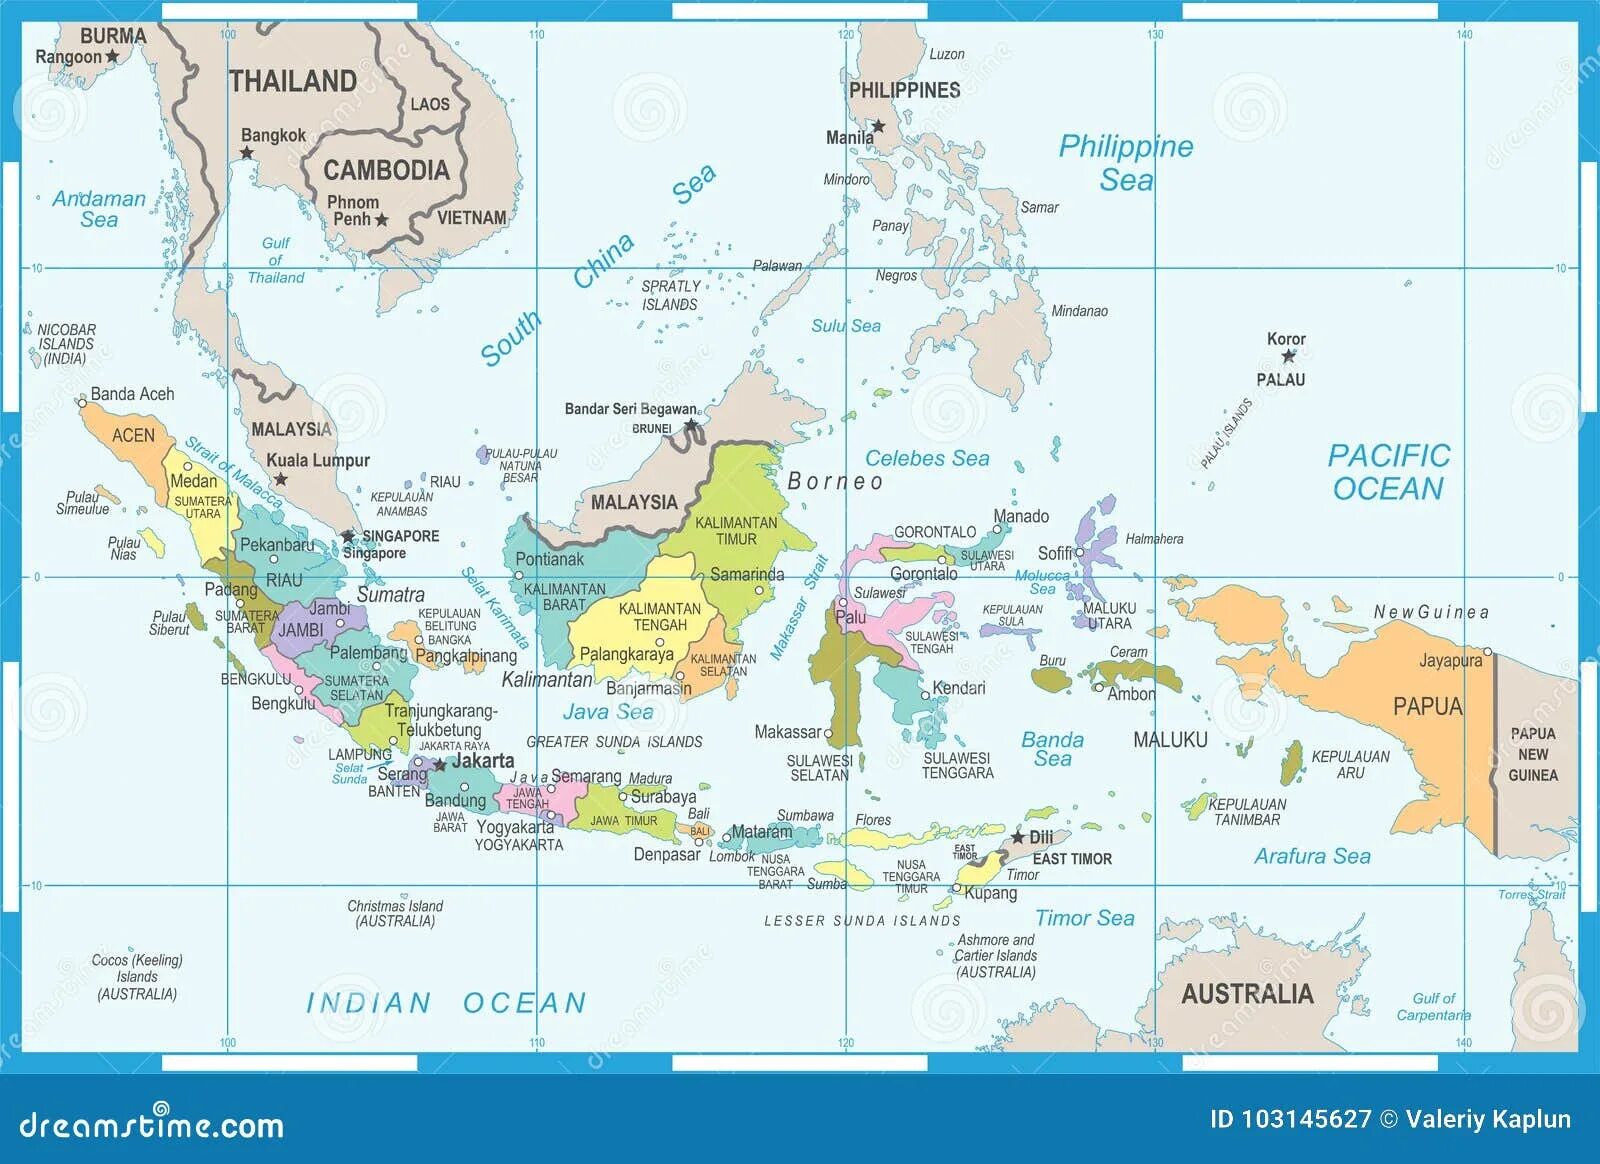 Где находятся большие зондские. Столица Индонезии на карте. Большие и малые Зондские острова на карте Евразии. Индонезия острова Ява и Суматра на карте. Острова Индонезии на карте.